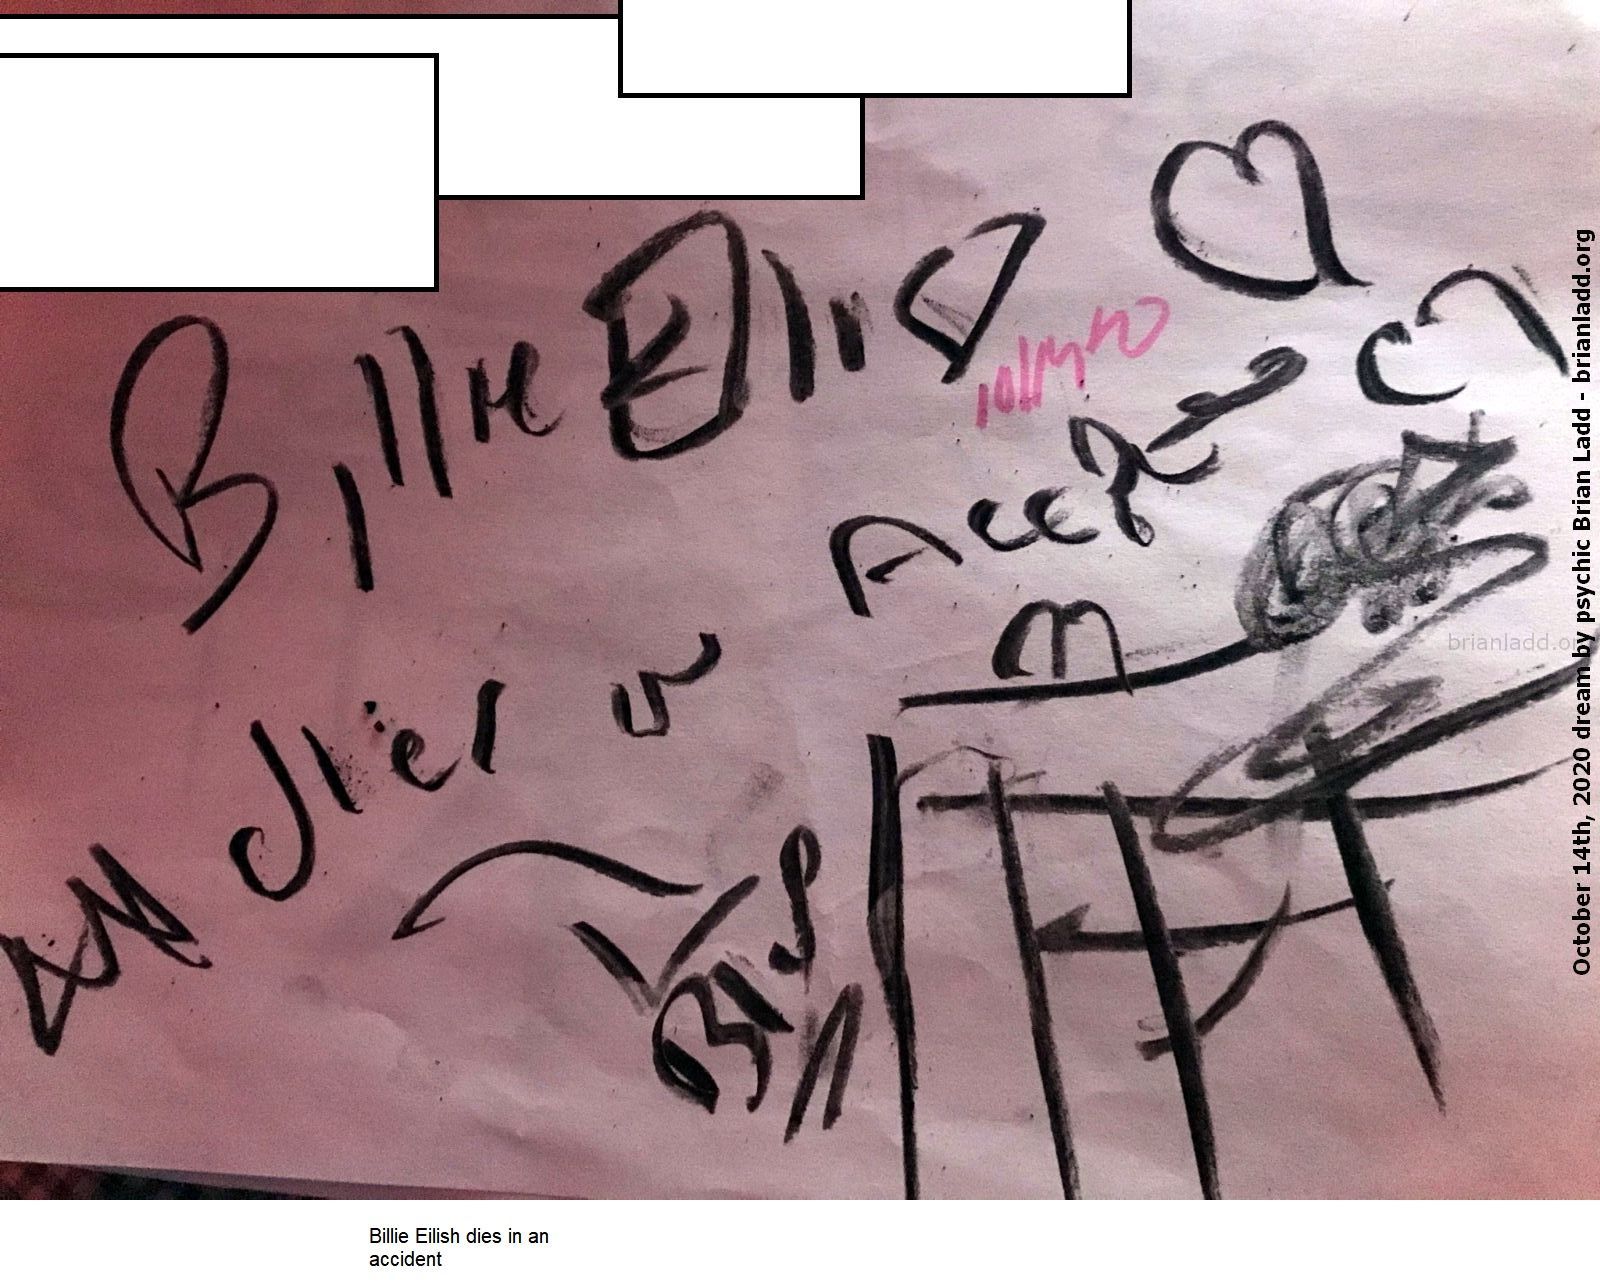 13831 14 October 2020 7 - Billie Eilish Dies In An Accident....
Billie Eilish Dies In An Accident.
